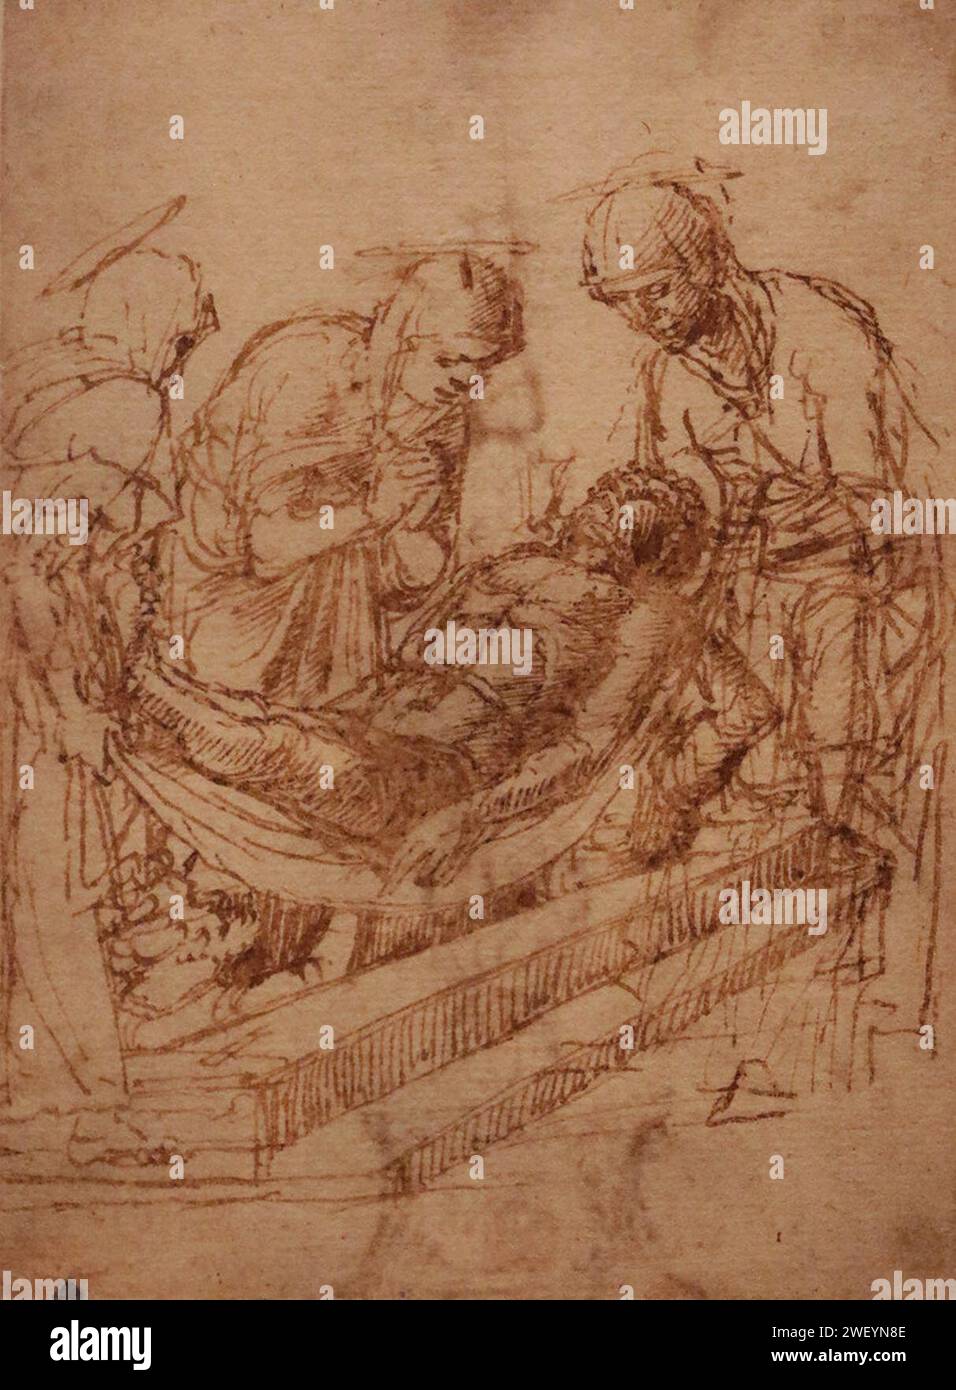 Andrea Mantegna, (1431 - 1506) - Seppellimento di Cristo (1460-1465) penna e inchiostro bruno su carta - Pinacoteca Tosio Martinengo, Brescia - Mostra Andrea Mantegna Torino. Foto Stock